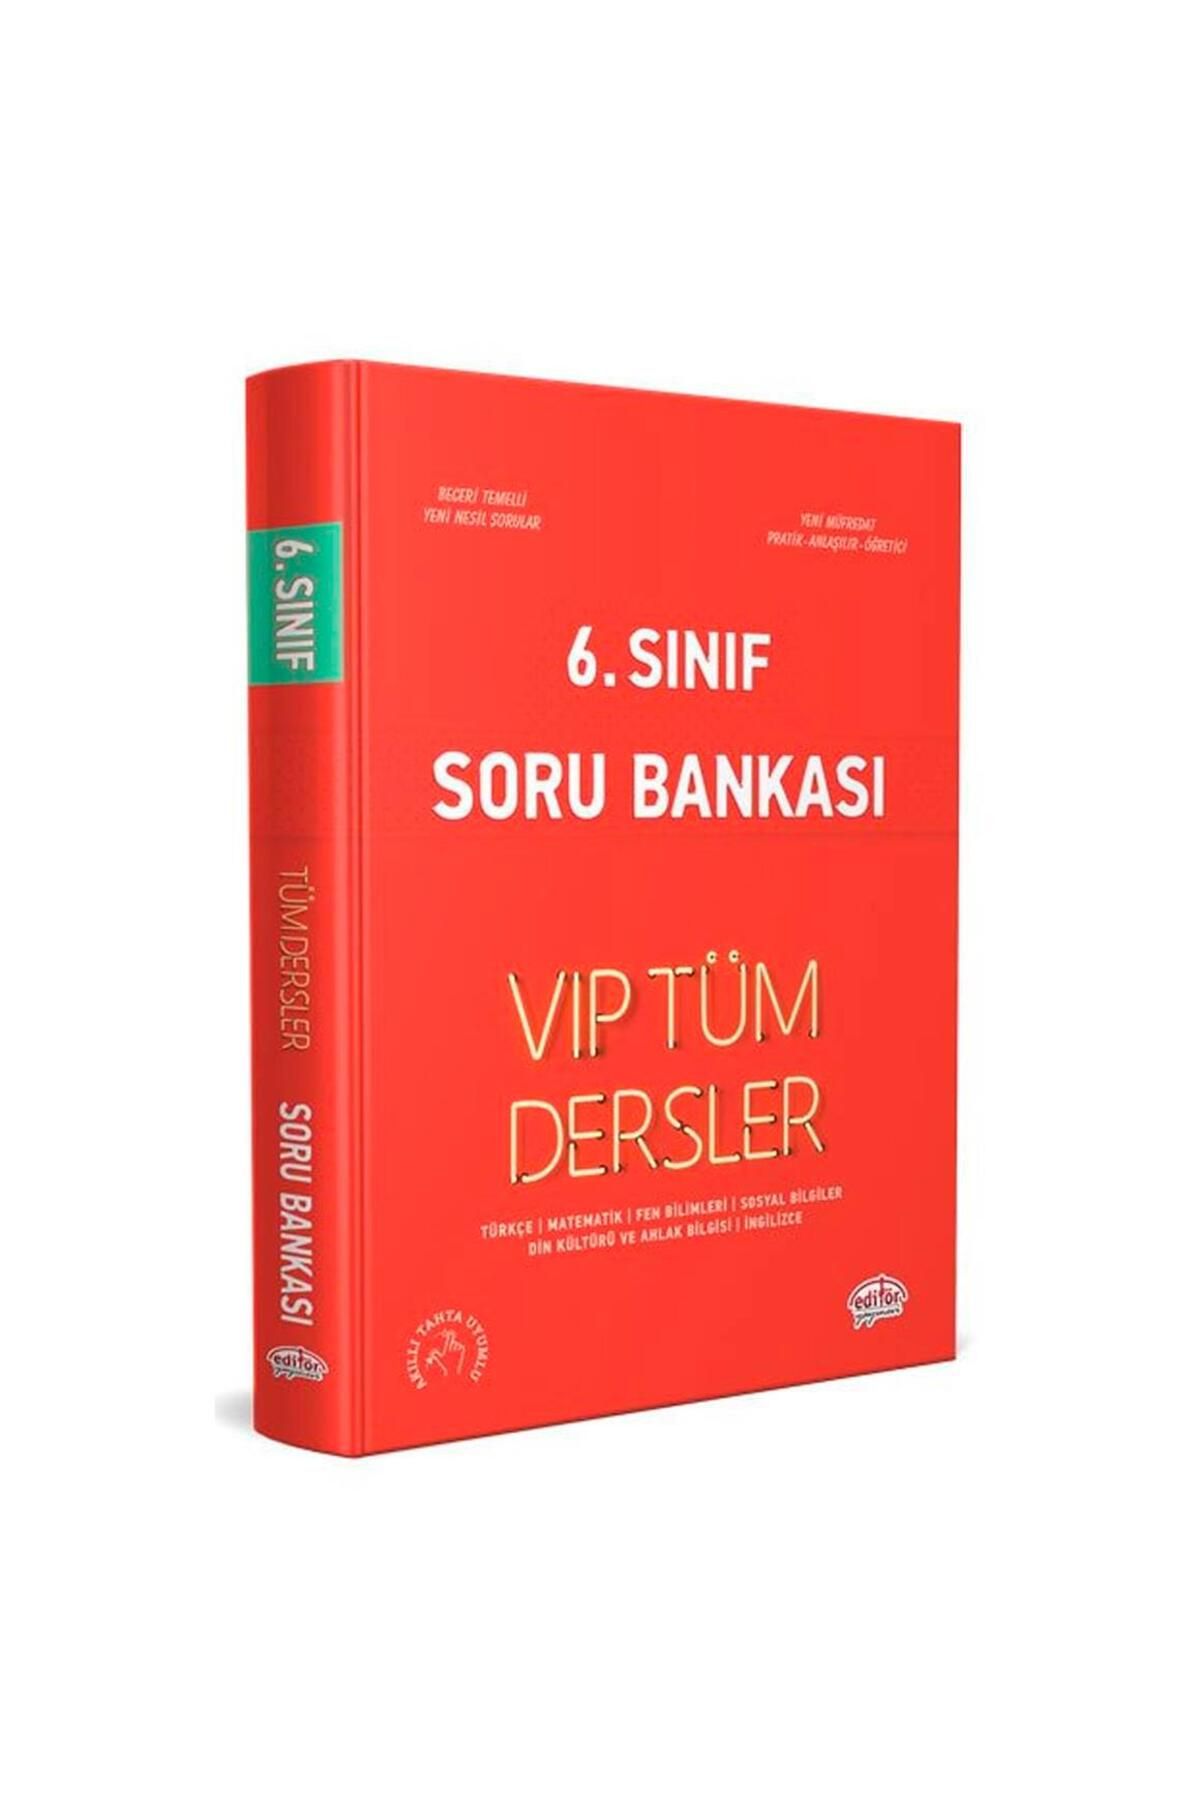 Editör Yayınları 6. Sınıf Vıp Tüm Dersler Soru Bankası Kırmızı Kitap